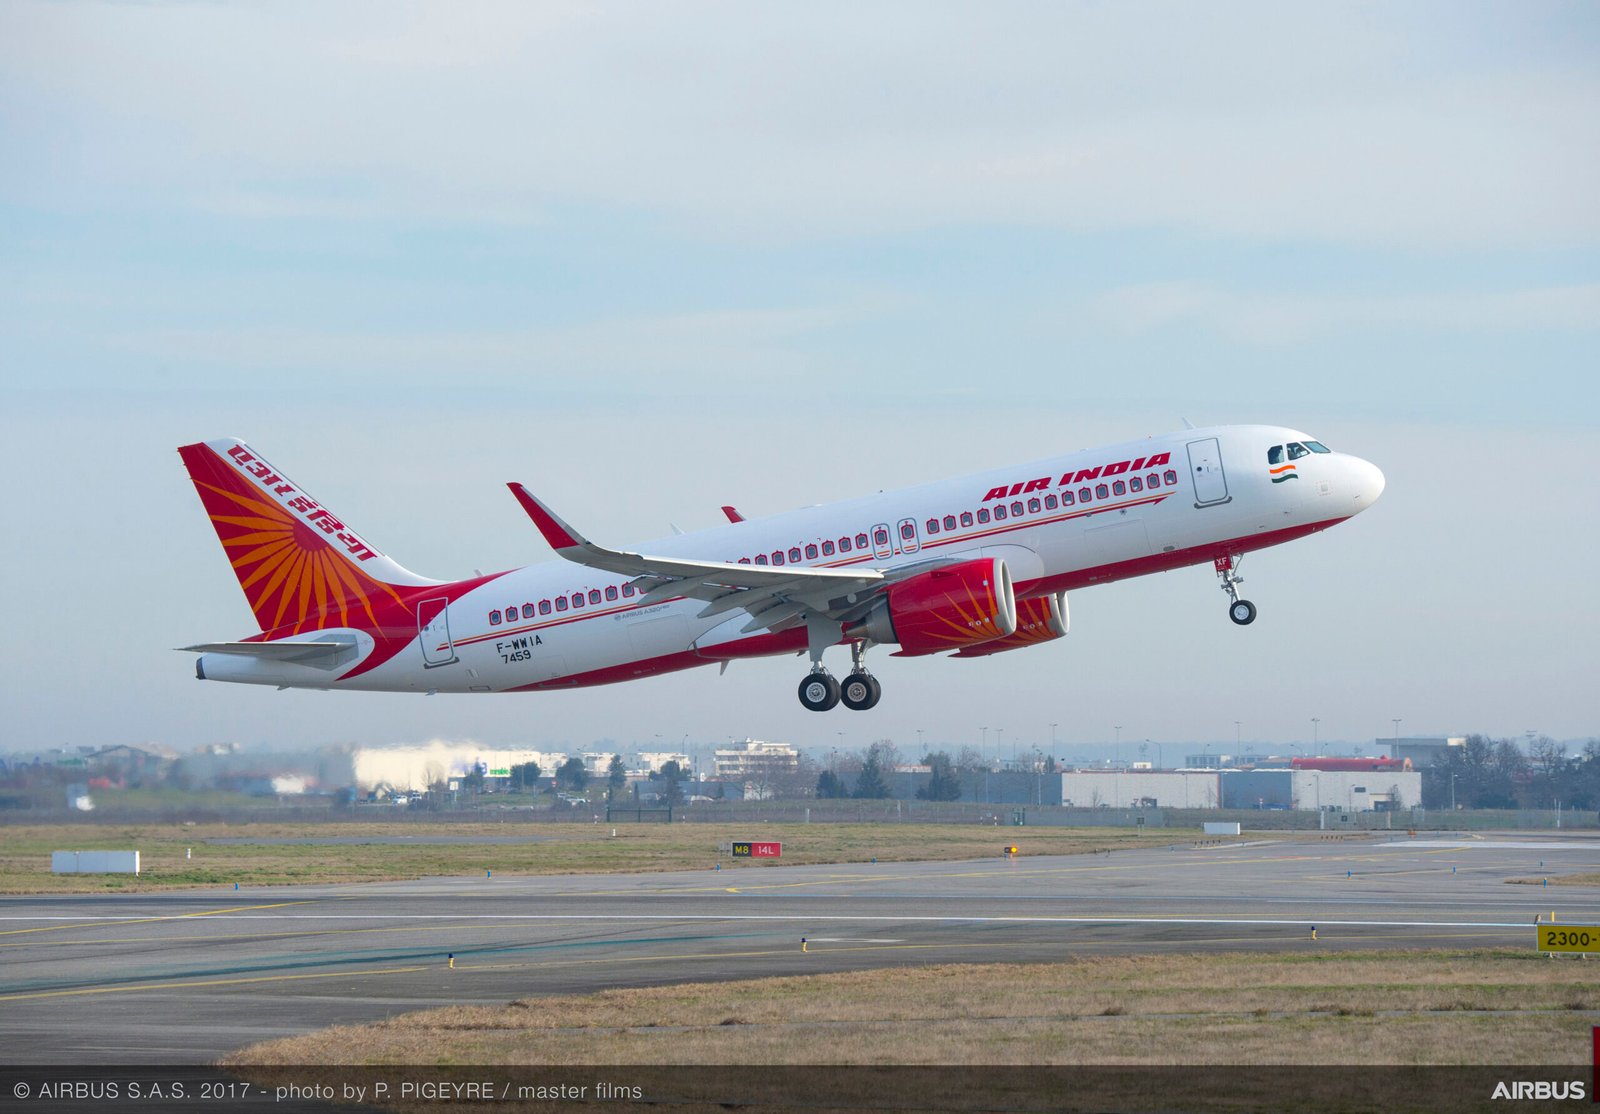 Air India opera actualmente 36 unidades del A320NEO en su flota y 9 del A320CEO. Foto: Airbus